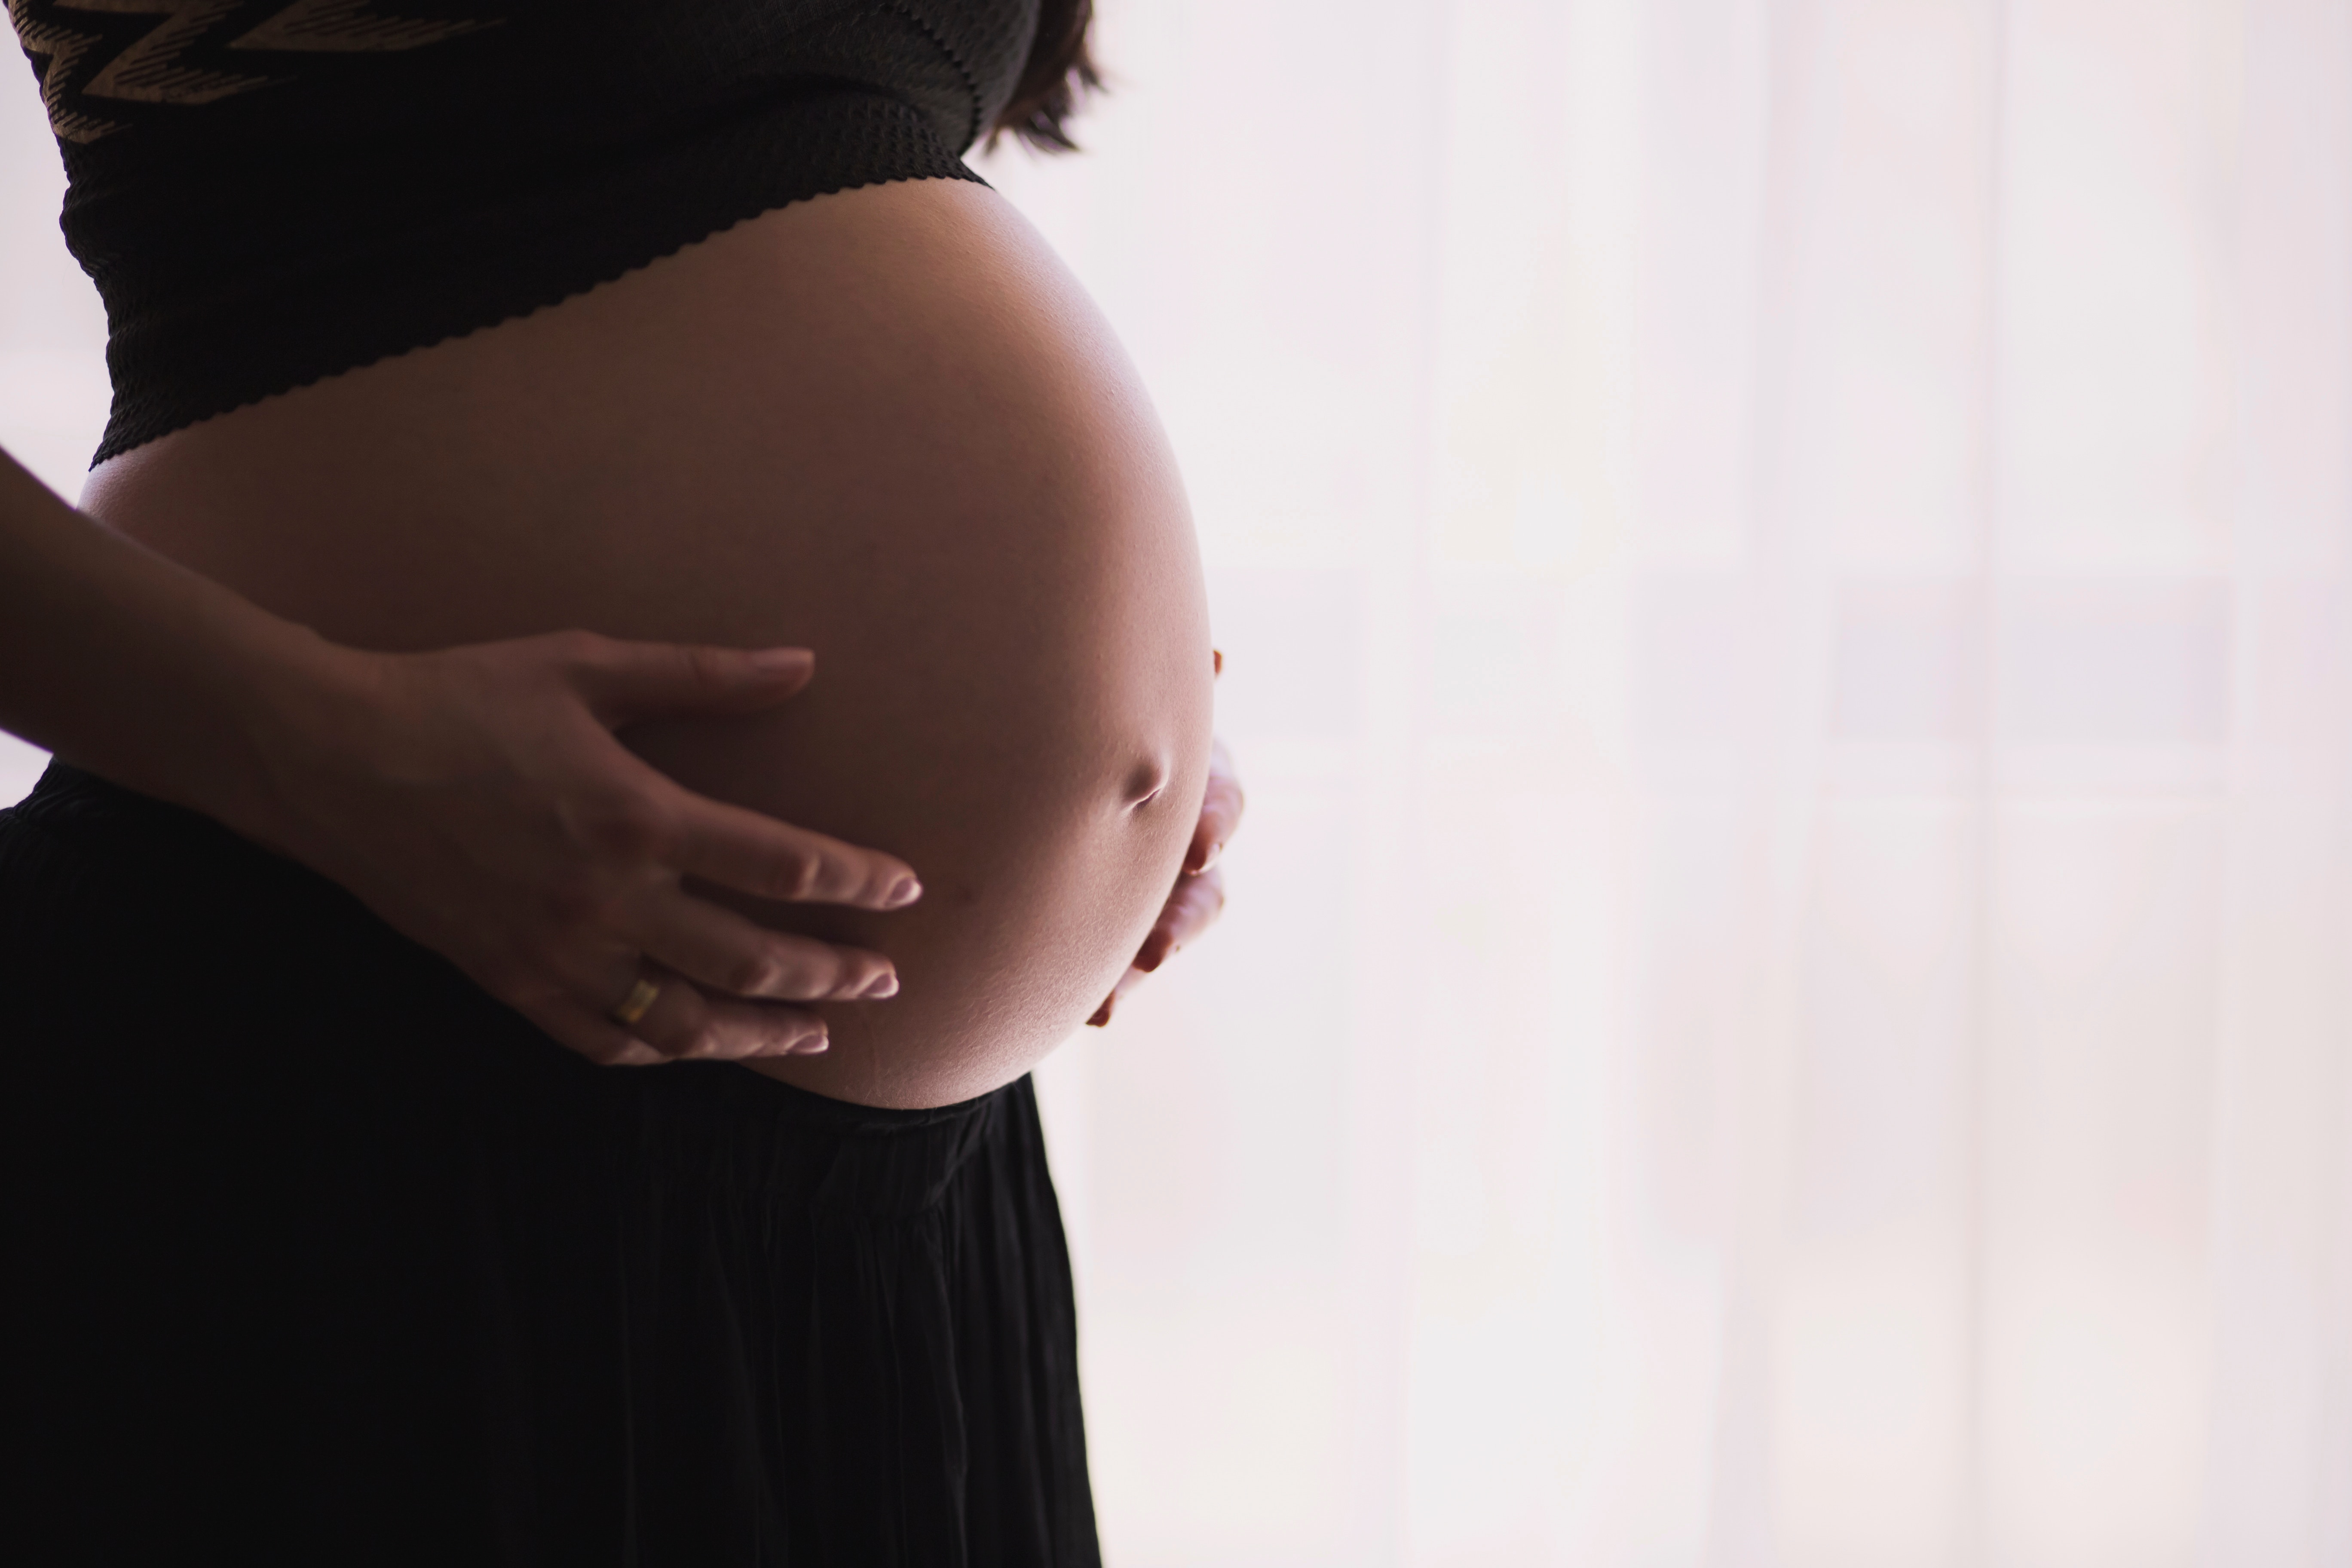 L’accouchement par césarienne associé à un risque accru de complications graves pour la mère